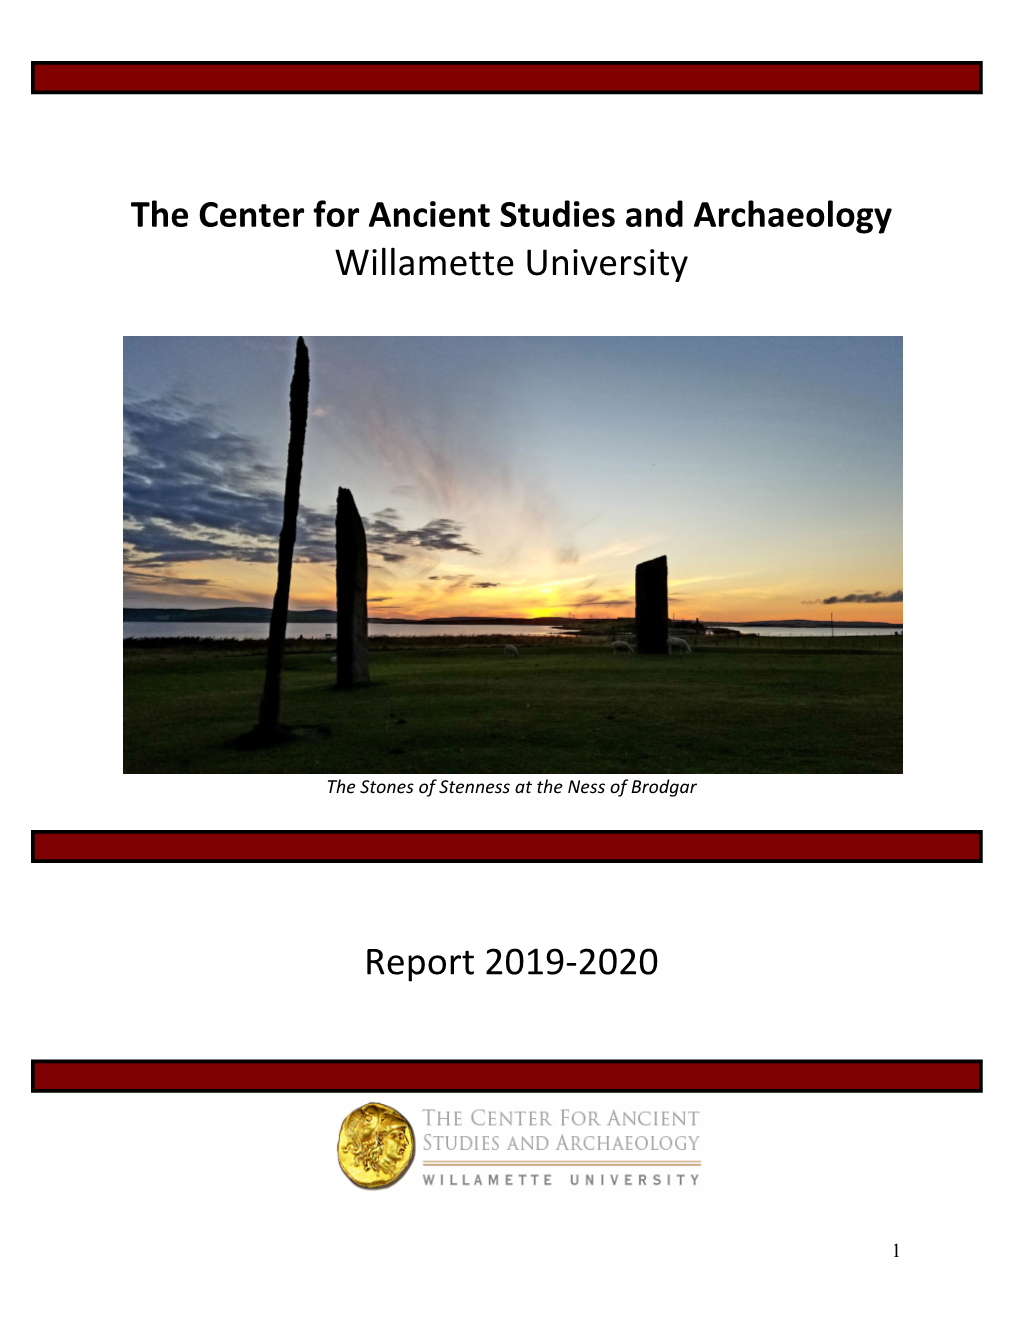 CASA Annual Report 2020